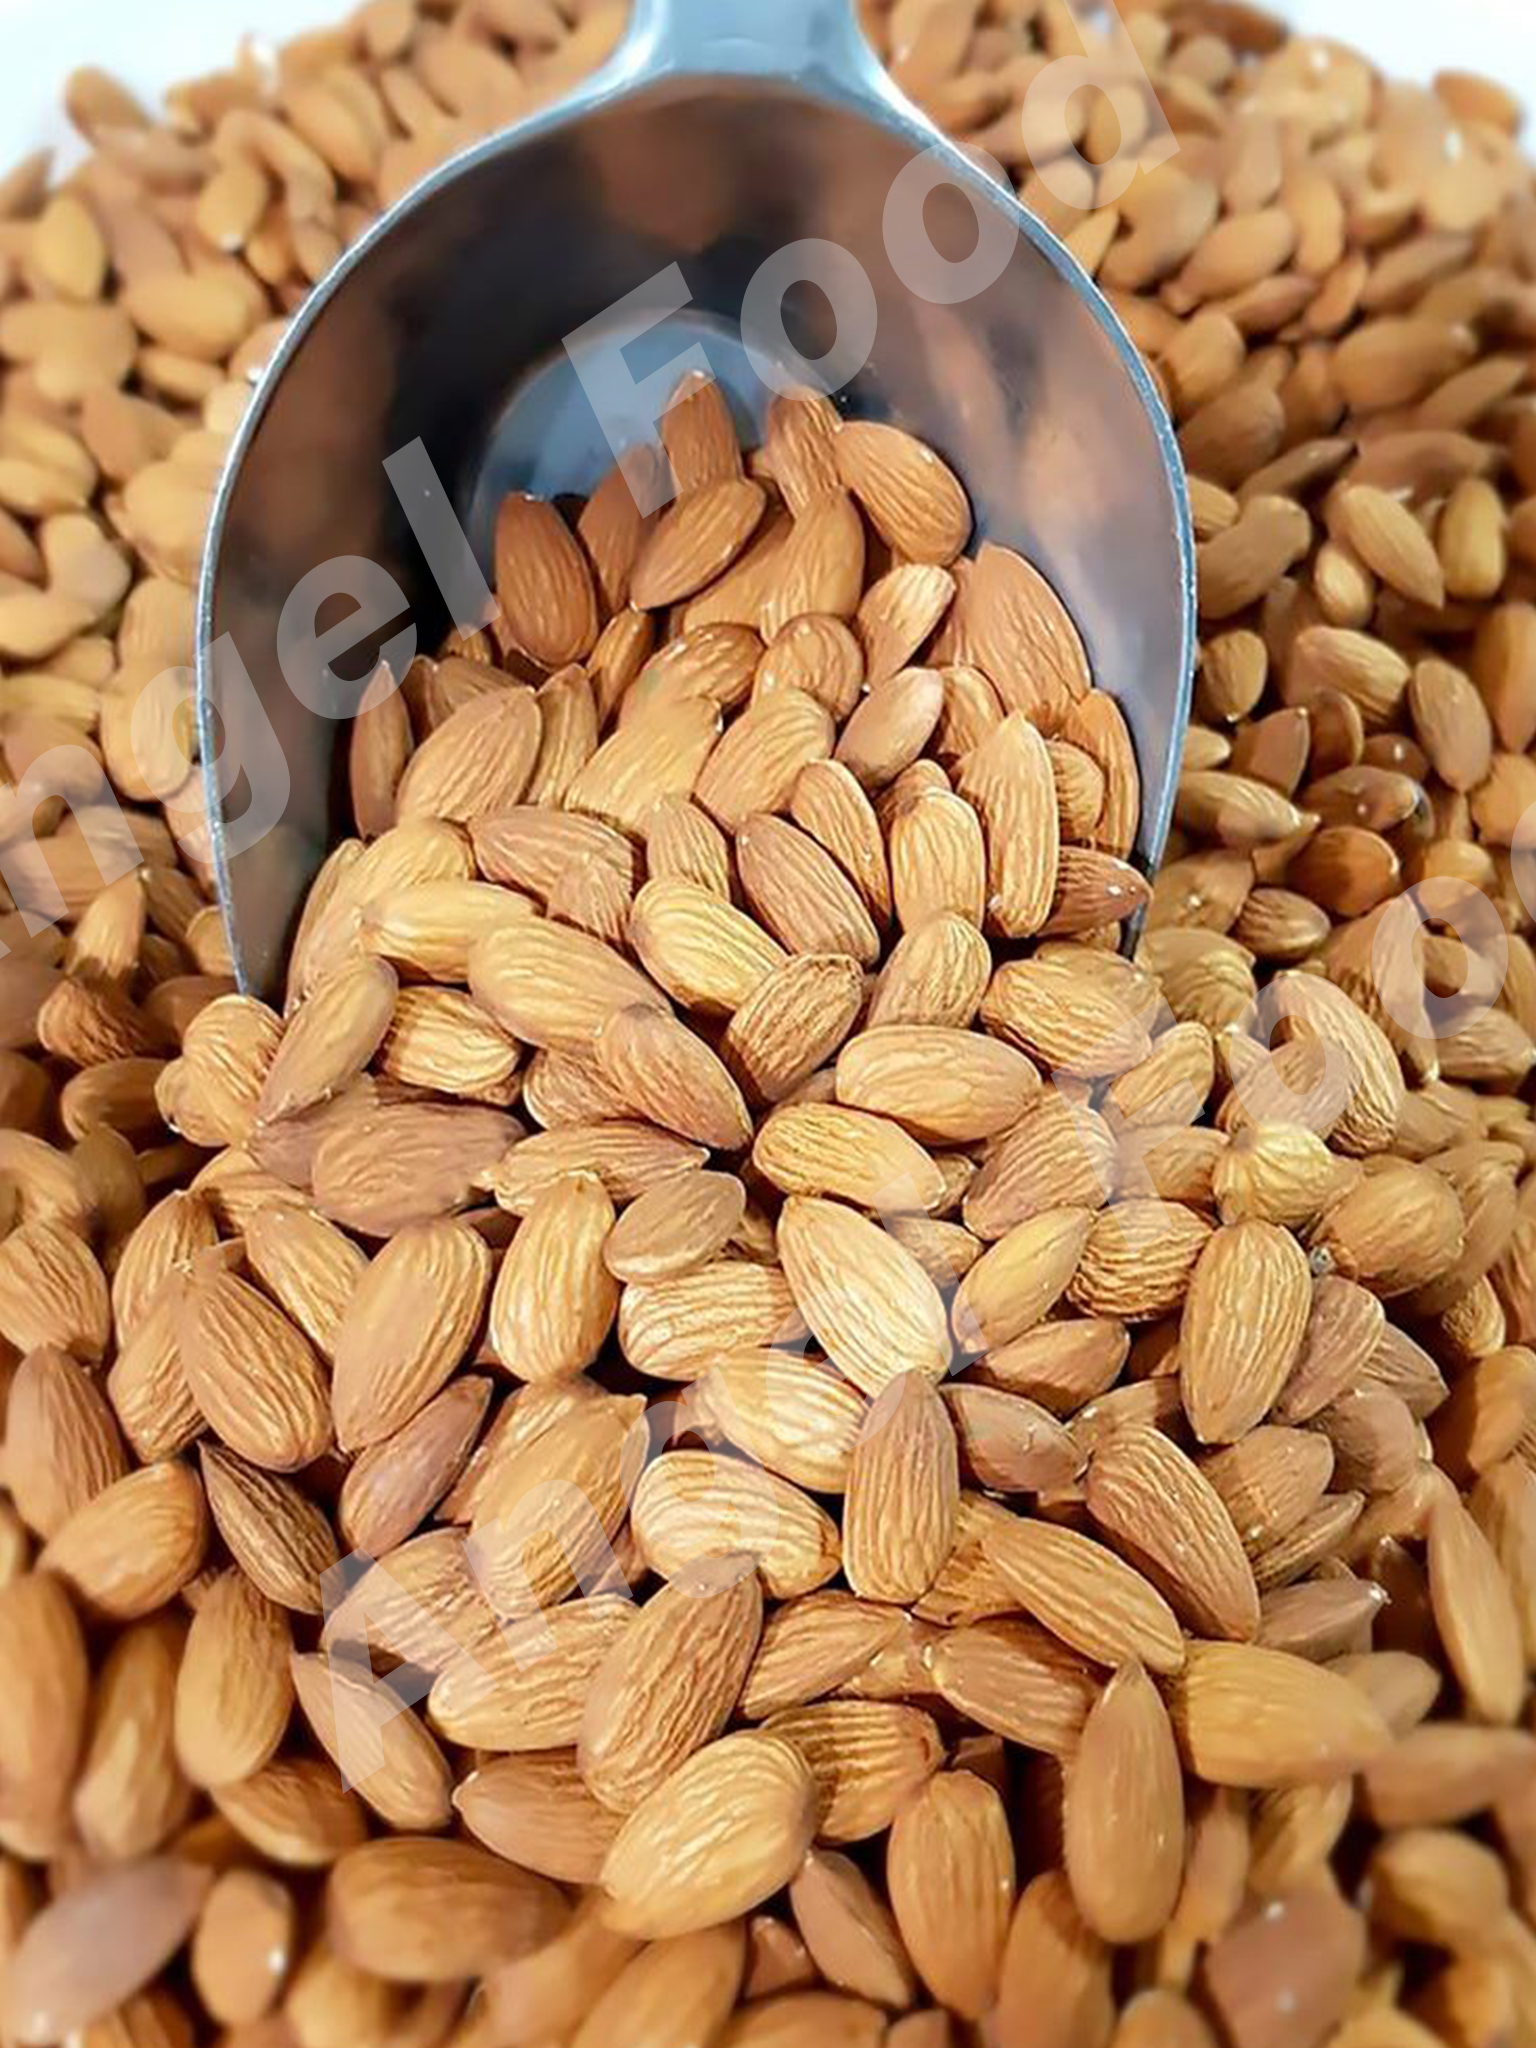 รายละเอียดเพิ่มเติมเกี่ยวกับ อัลมอนด์อบ ธรรมชาติ Natural Roasted Almonds [ขนาด 1,000 กรัม] ไม่ใส่เกลือ พร้อมรับประทาน สดใหม่ กรอบ อร่อย